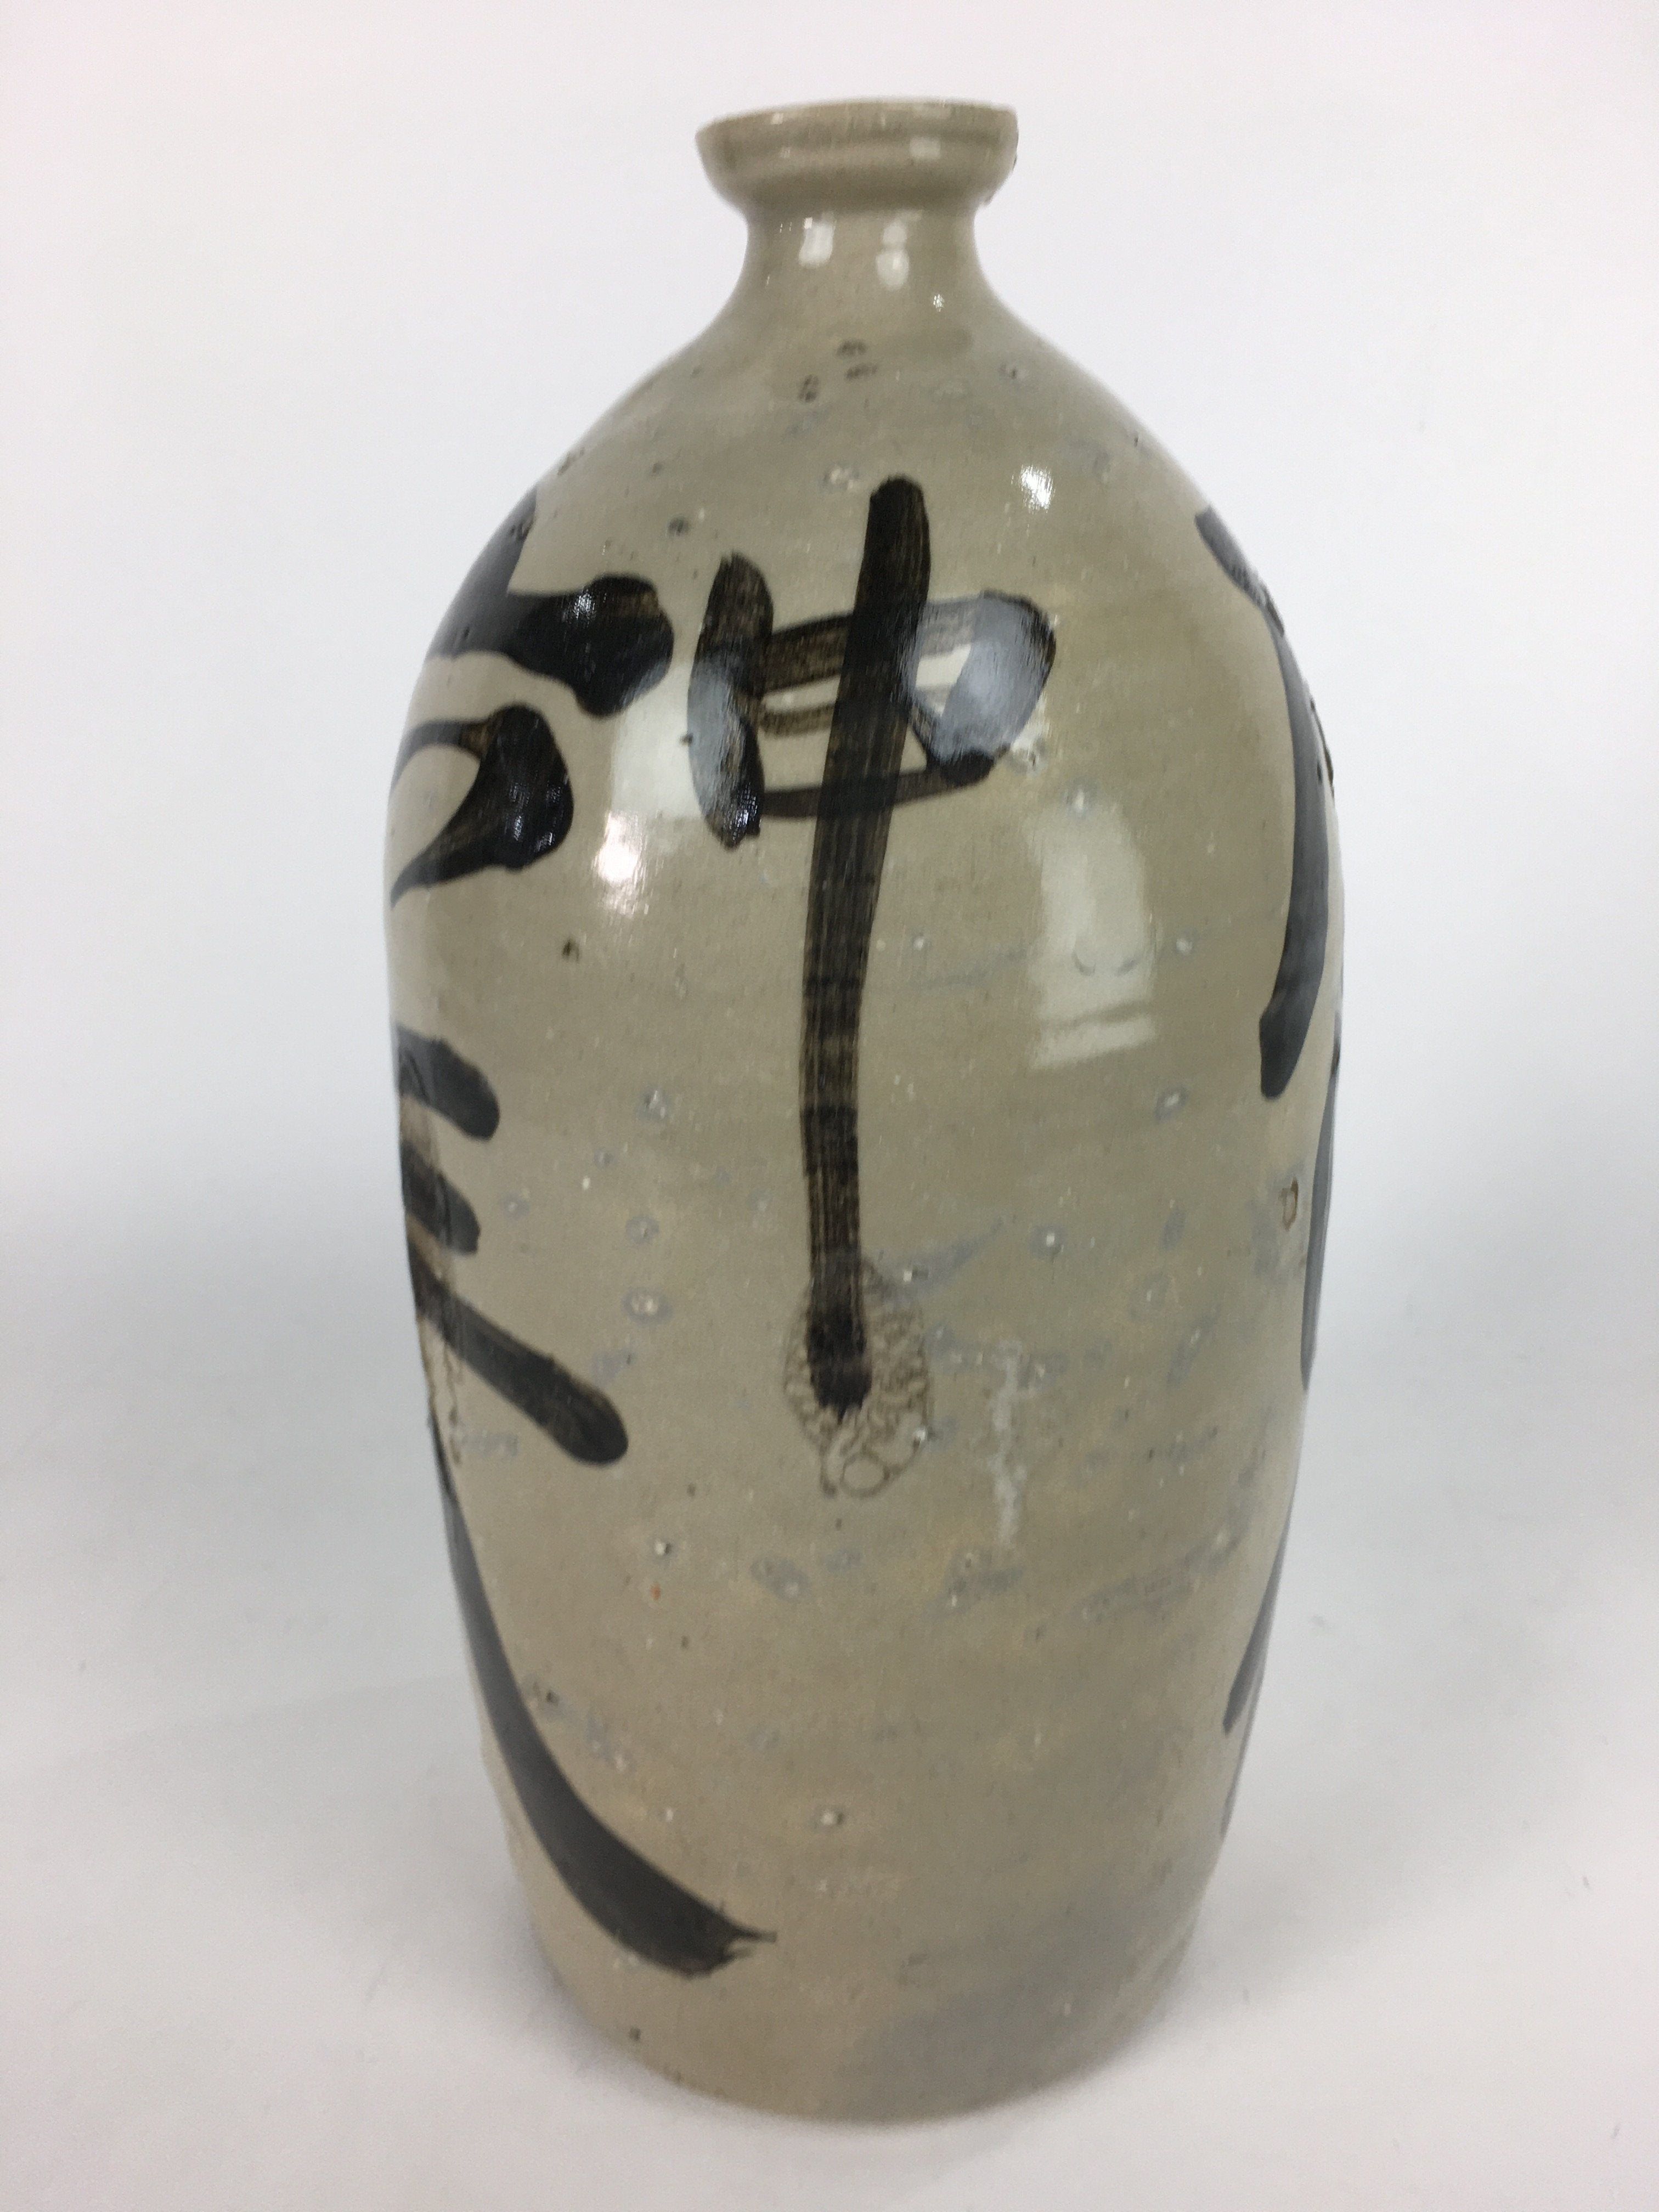 Antique Japanese Ceramic Sake Bottle Kayoi Tokkuri Hand-Written Kanji TS289